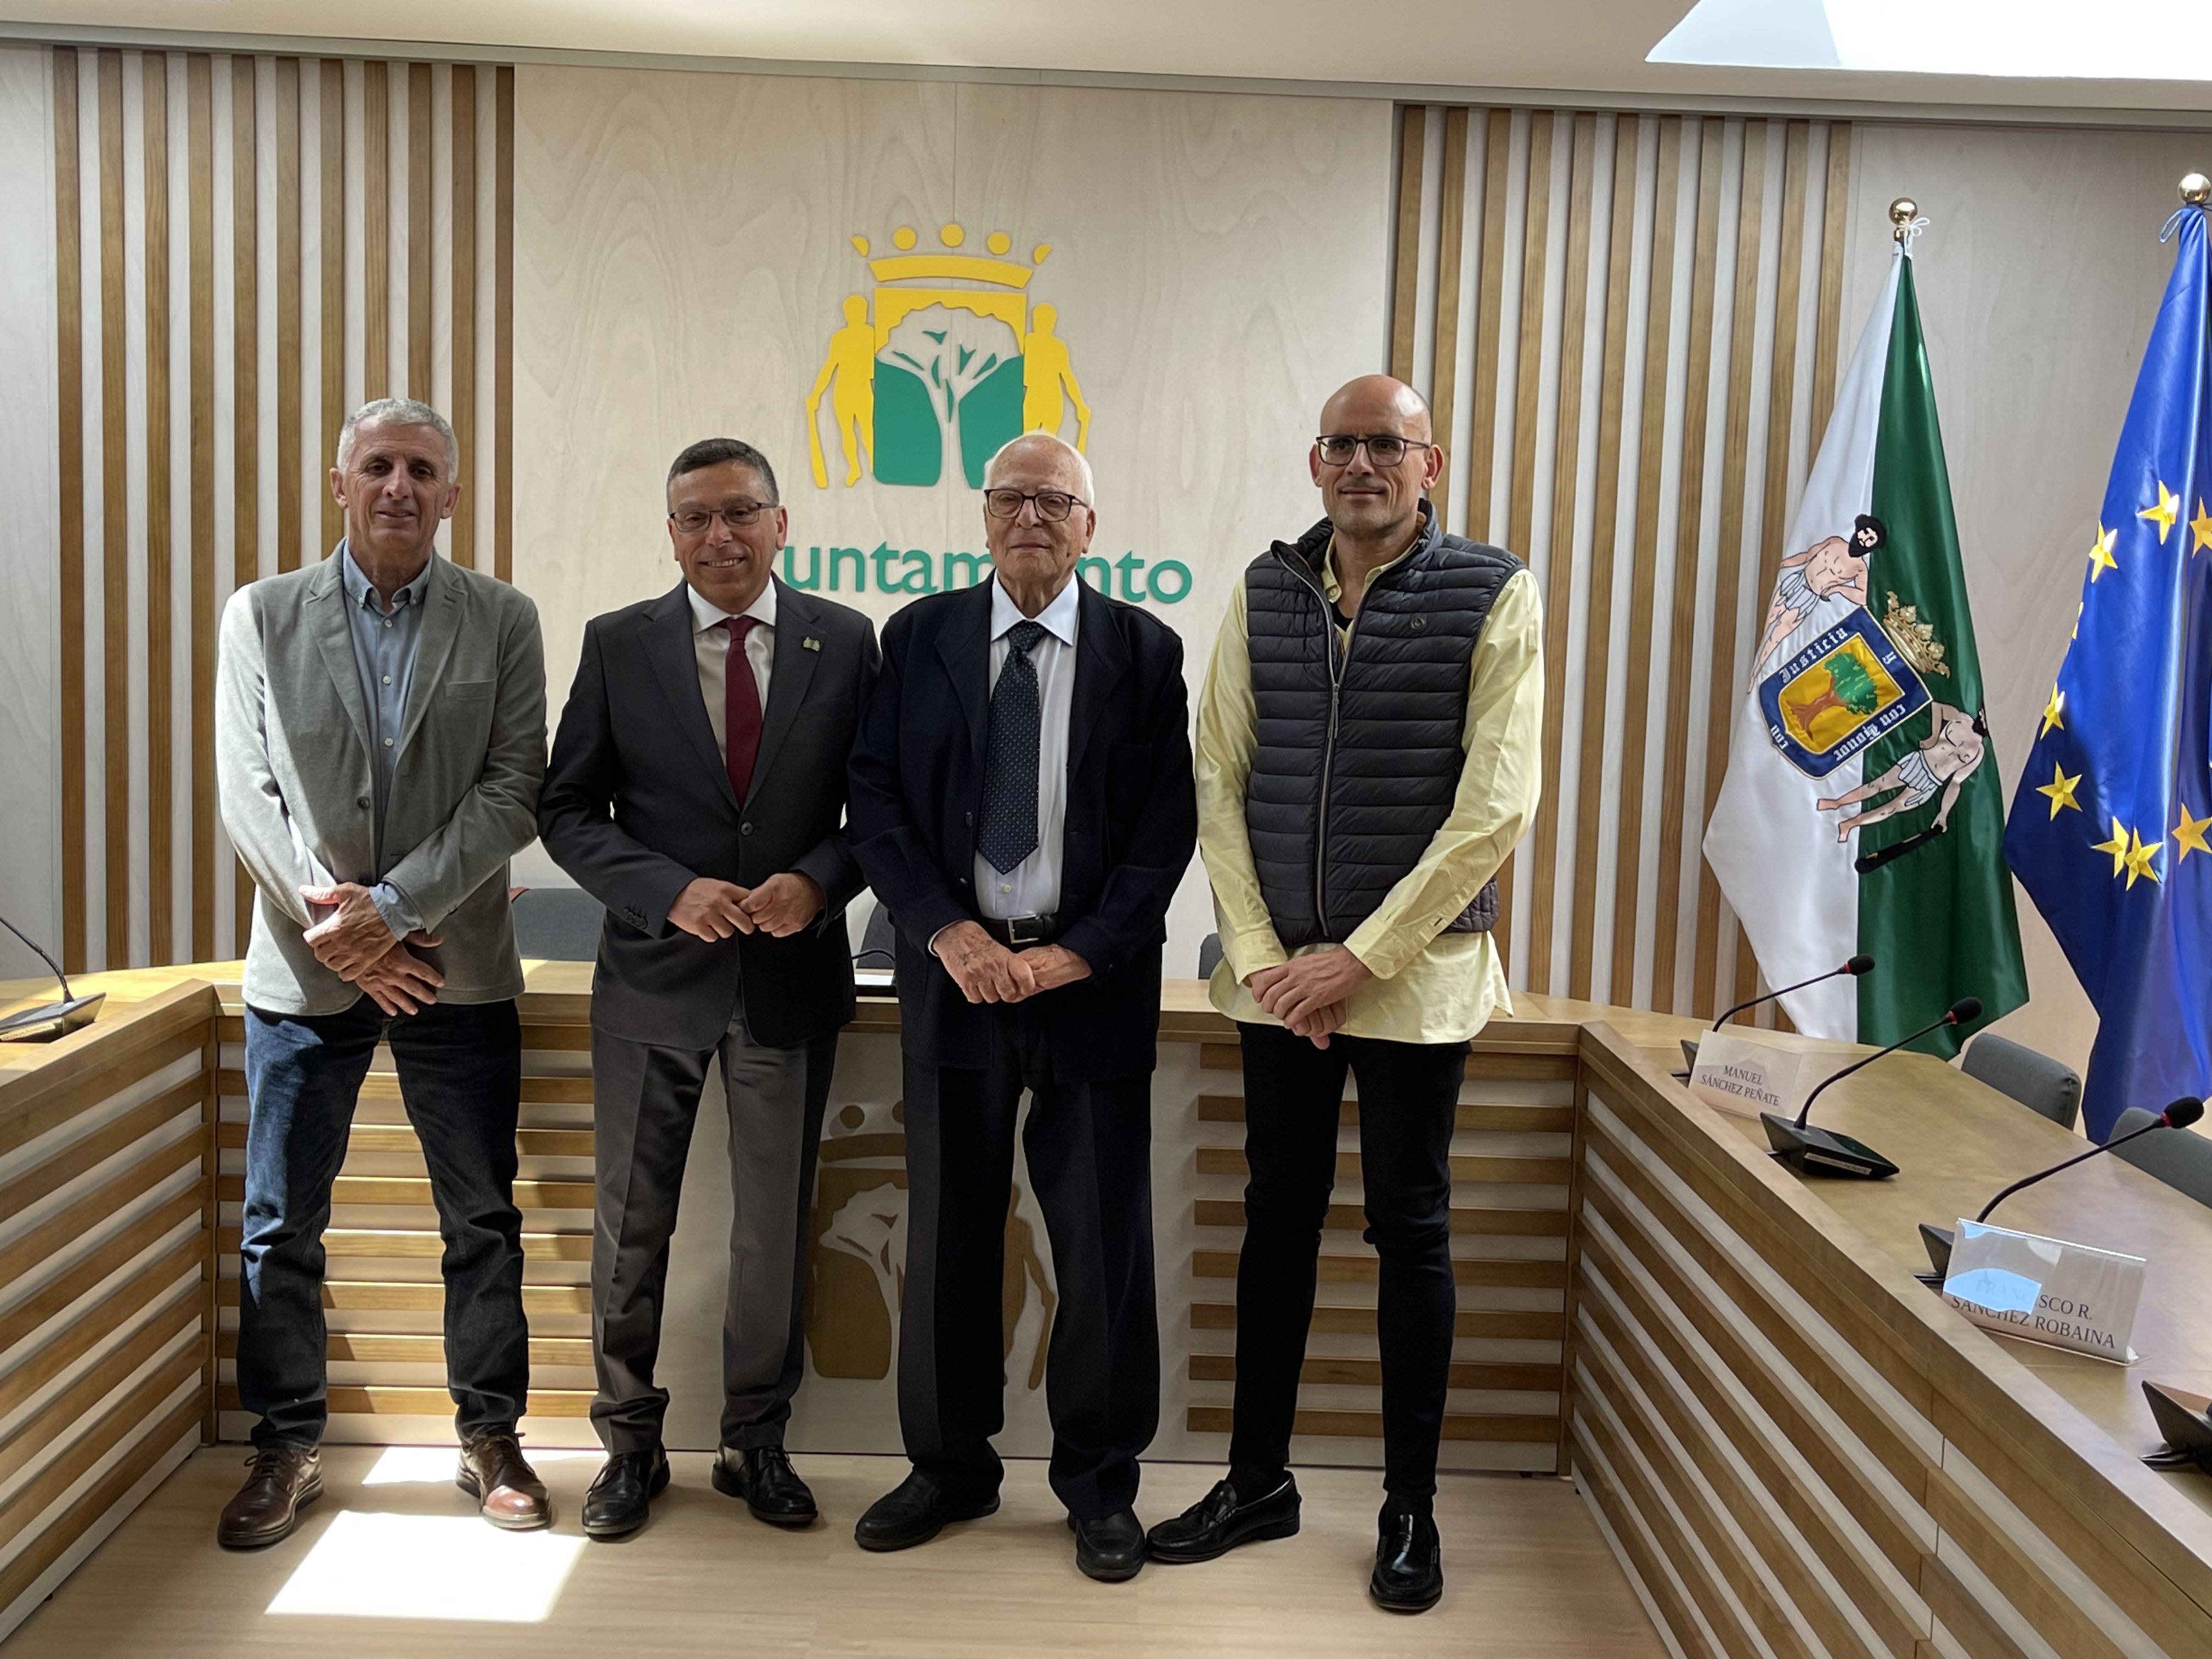 Valsequillo homenajea a los cuatro alcaldes de la Democracia